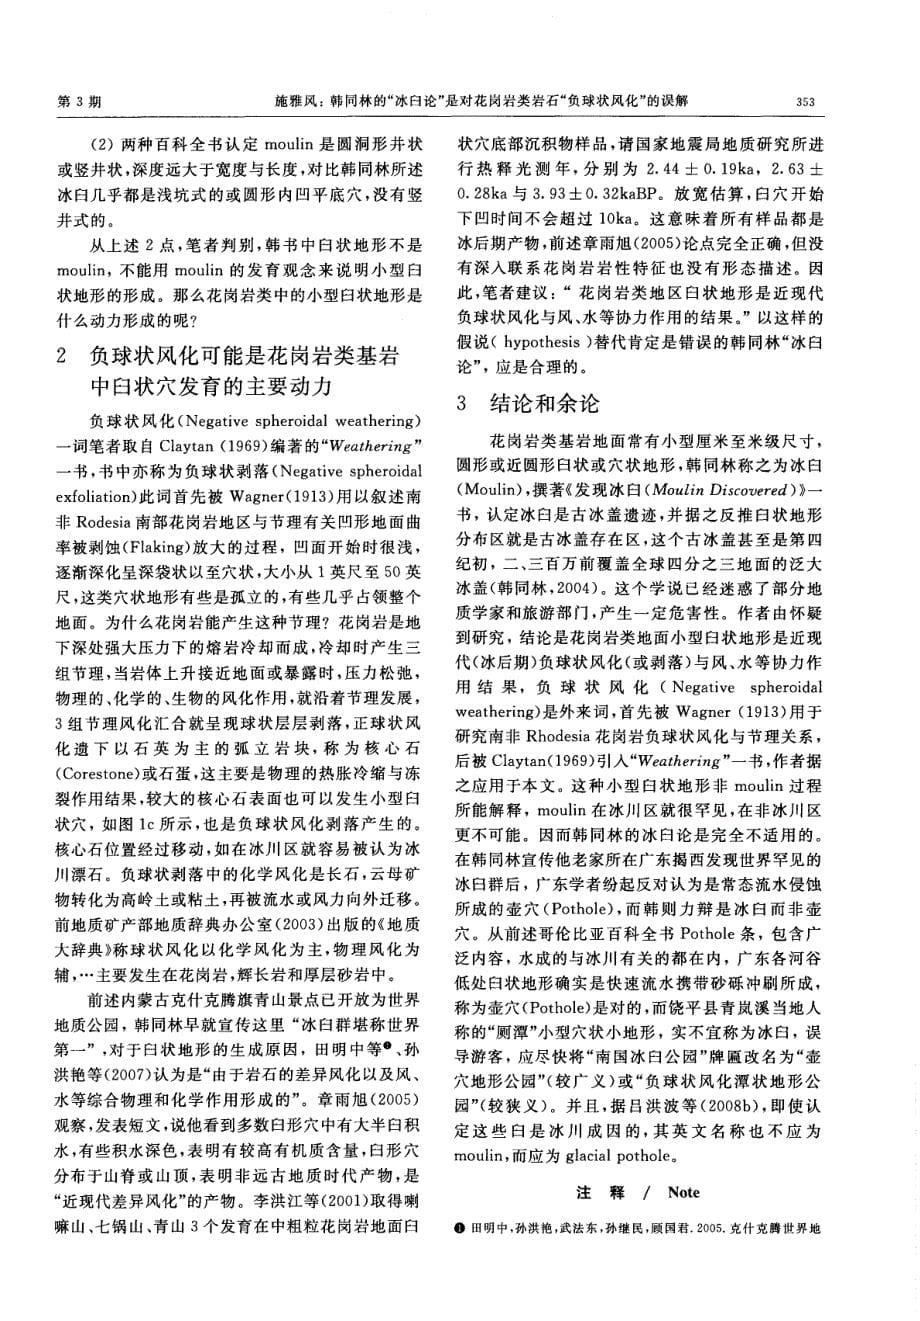 韩同林的“冰臼论”是对花岗岩类岩石“负球状风化”的误解_第5页